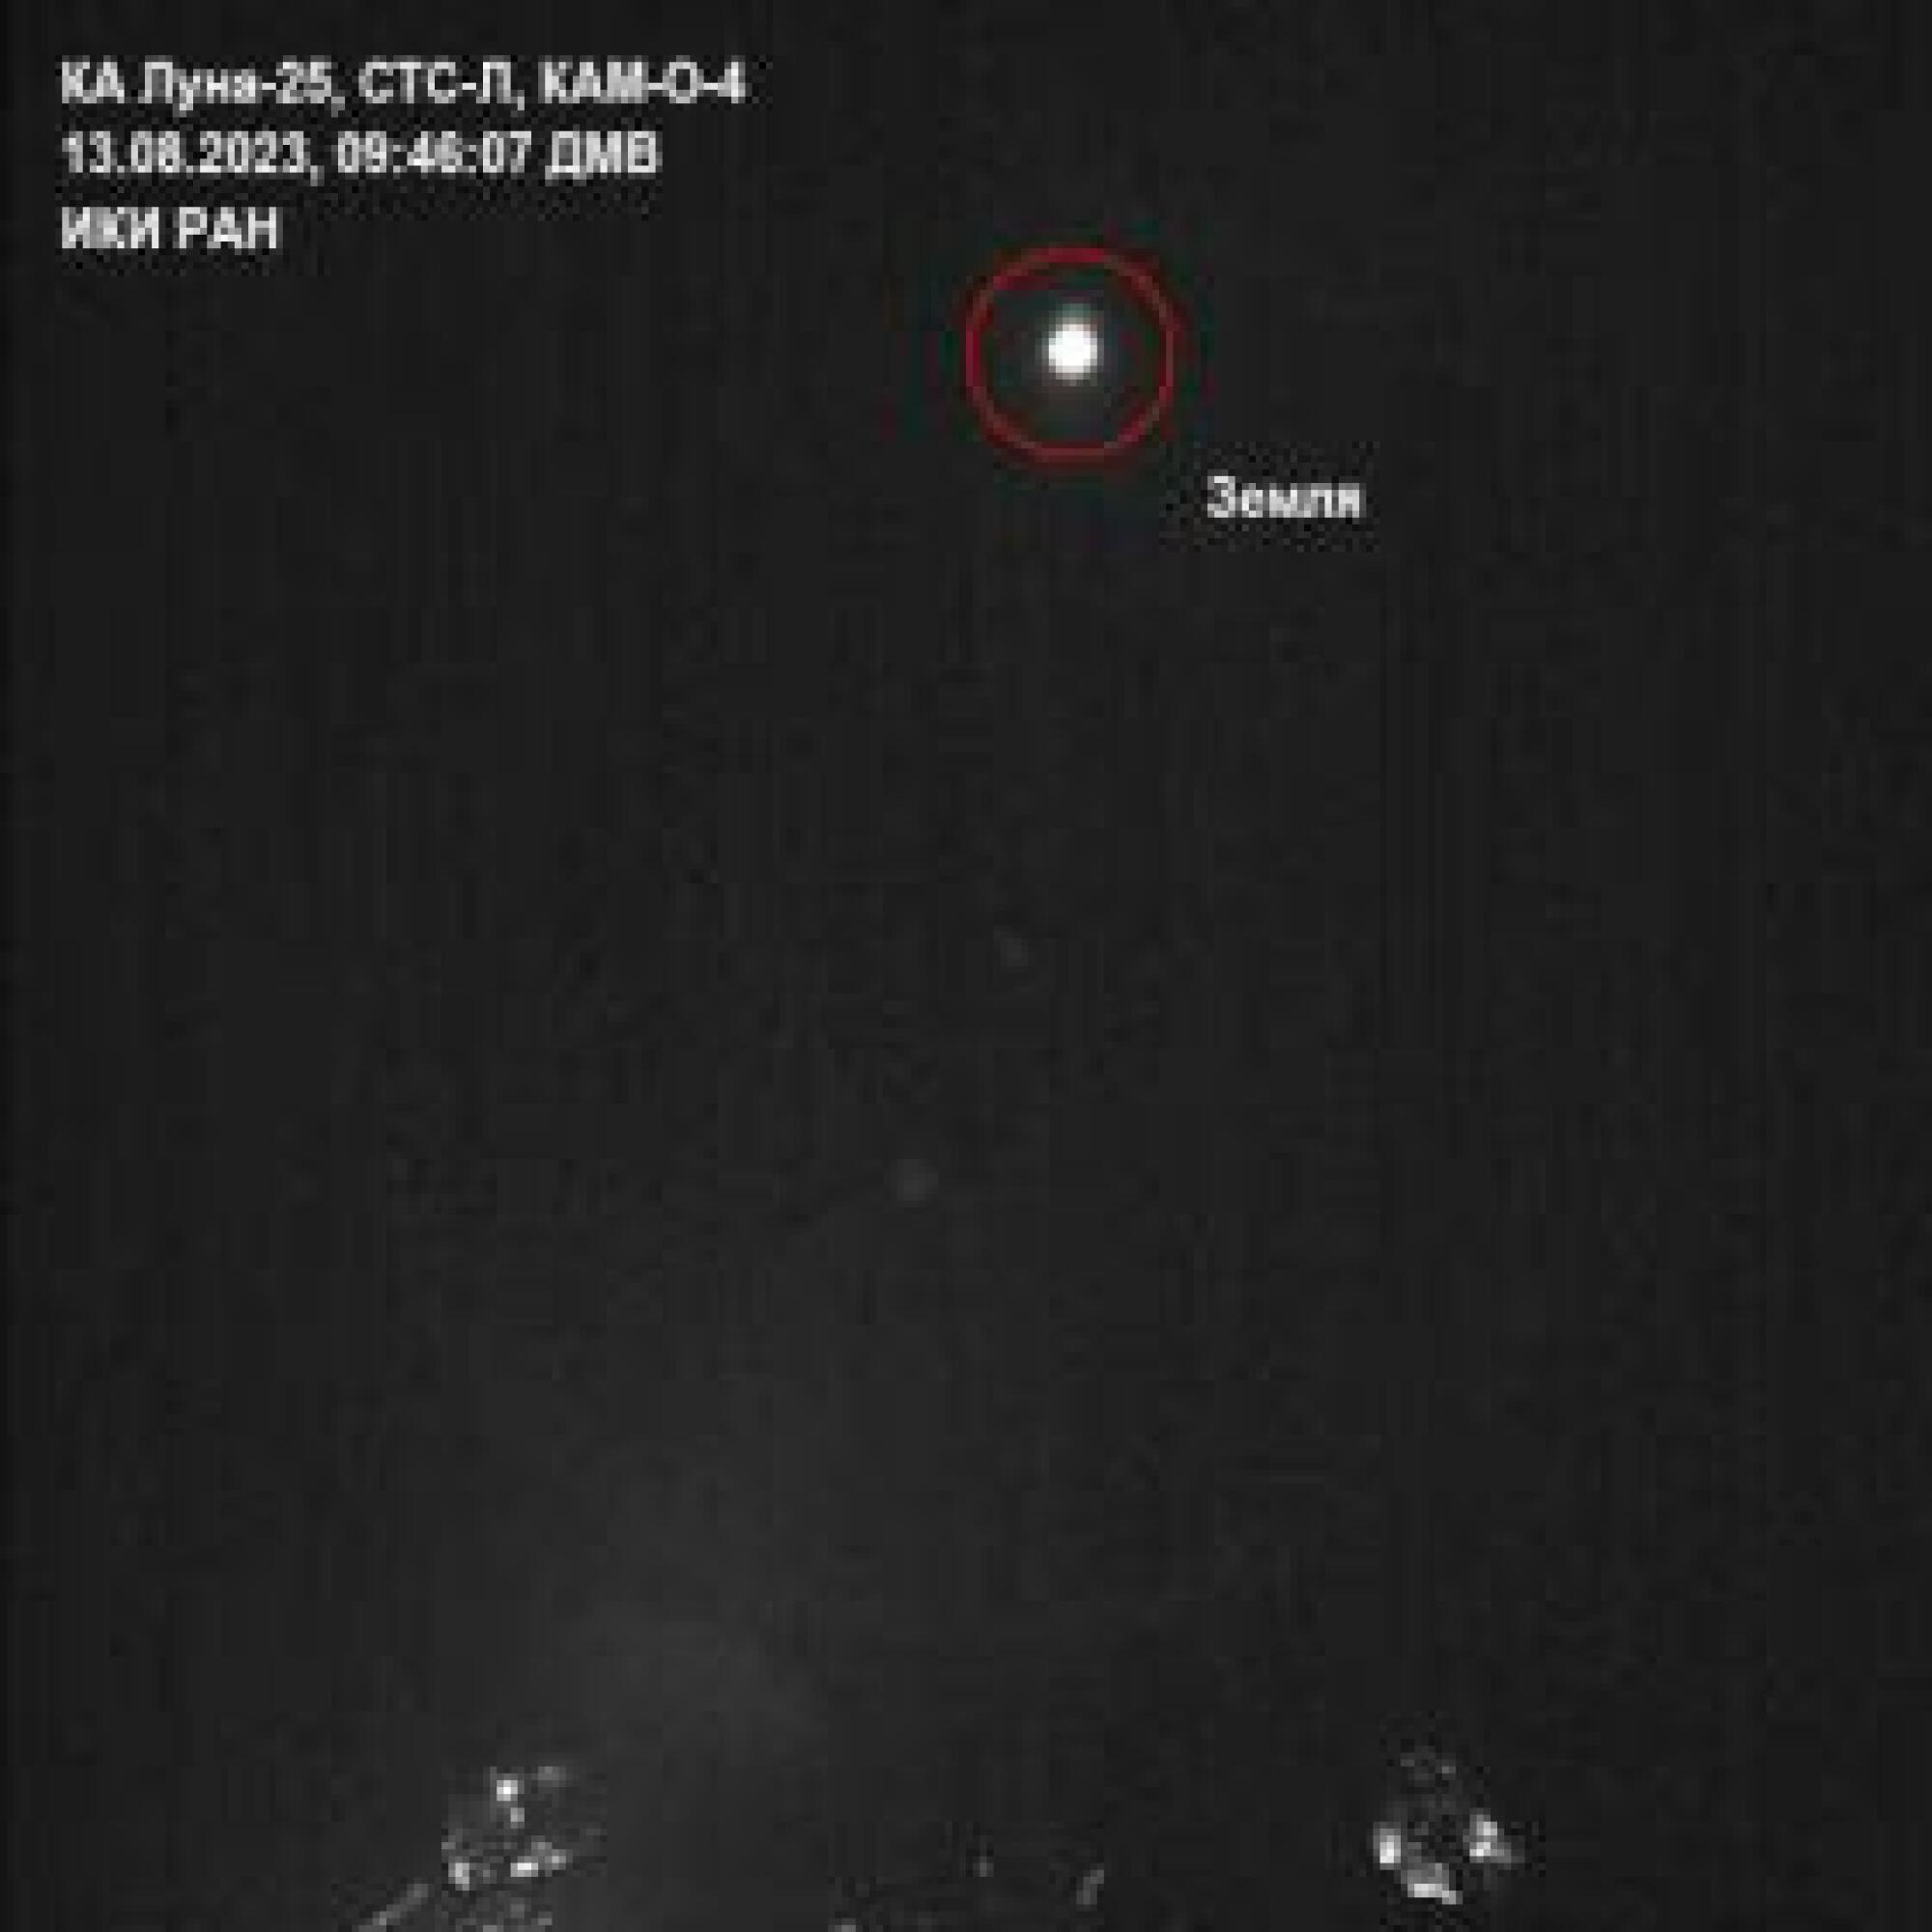 La Tierra vista desde la nave espacial Luna 25 el 13 de agosto de 2023.